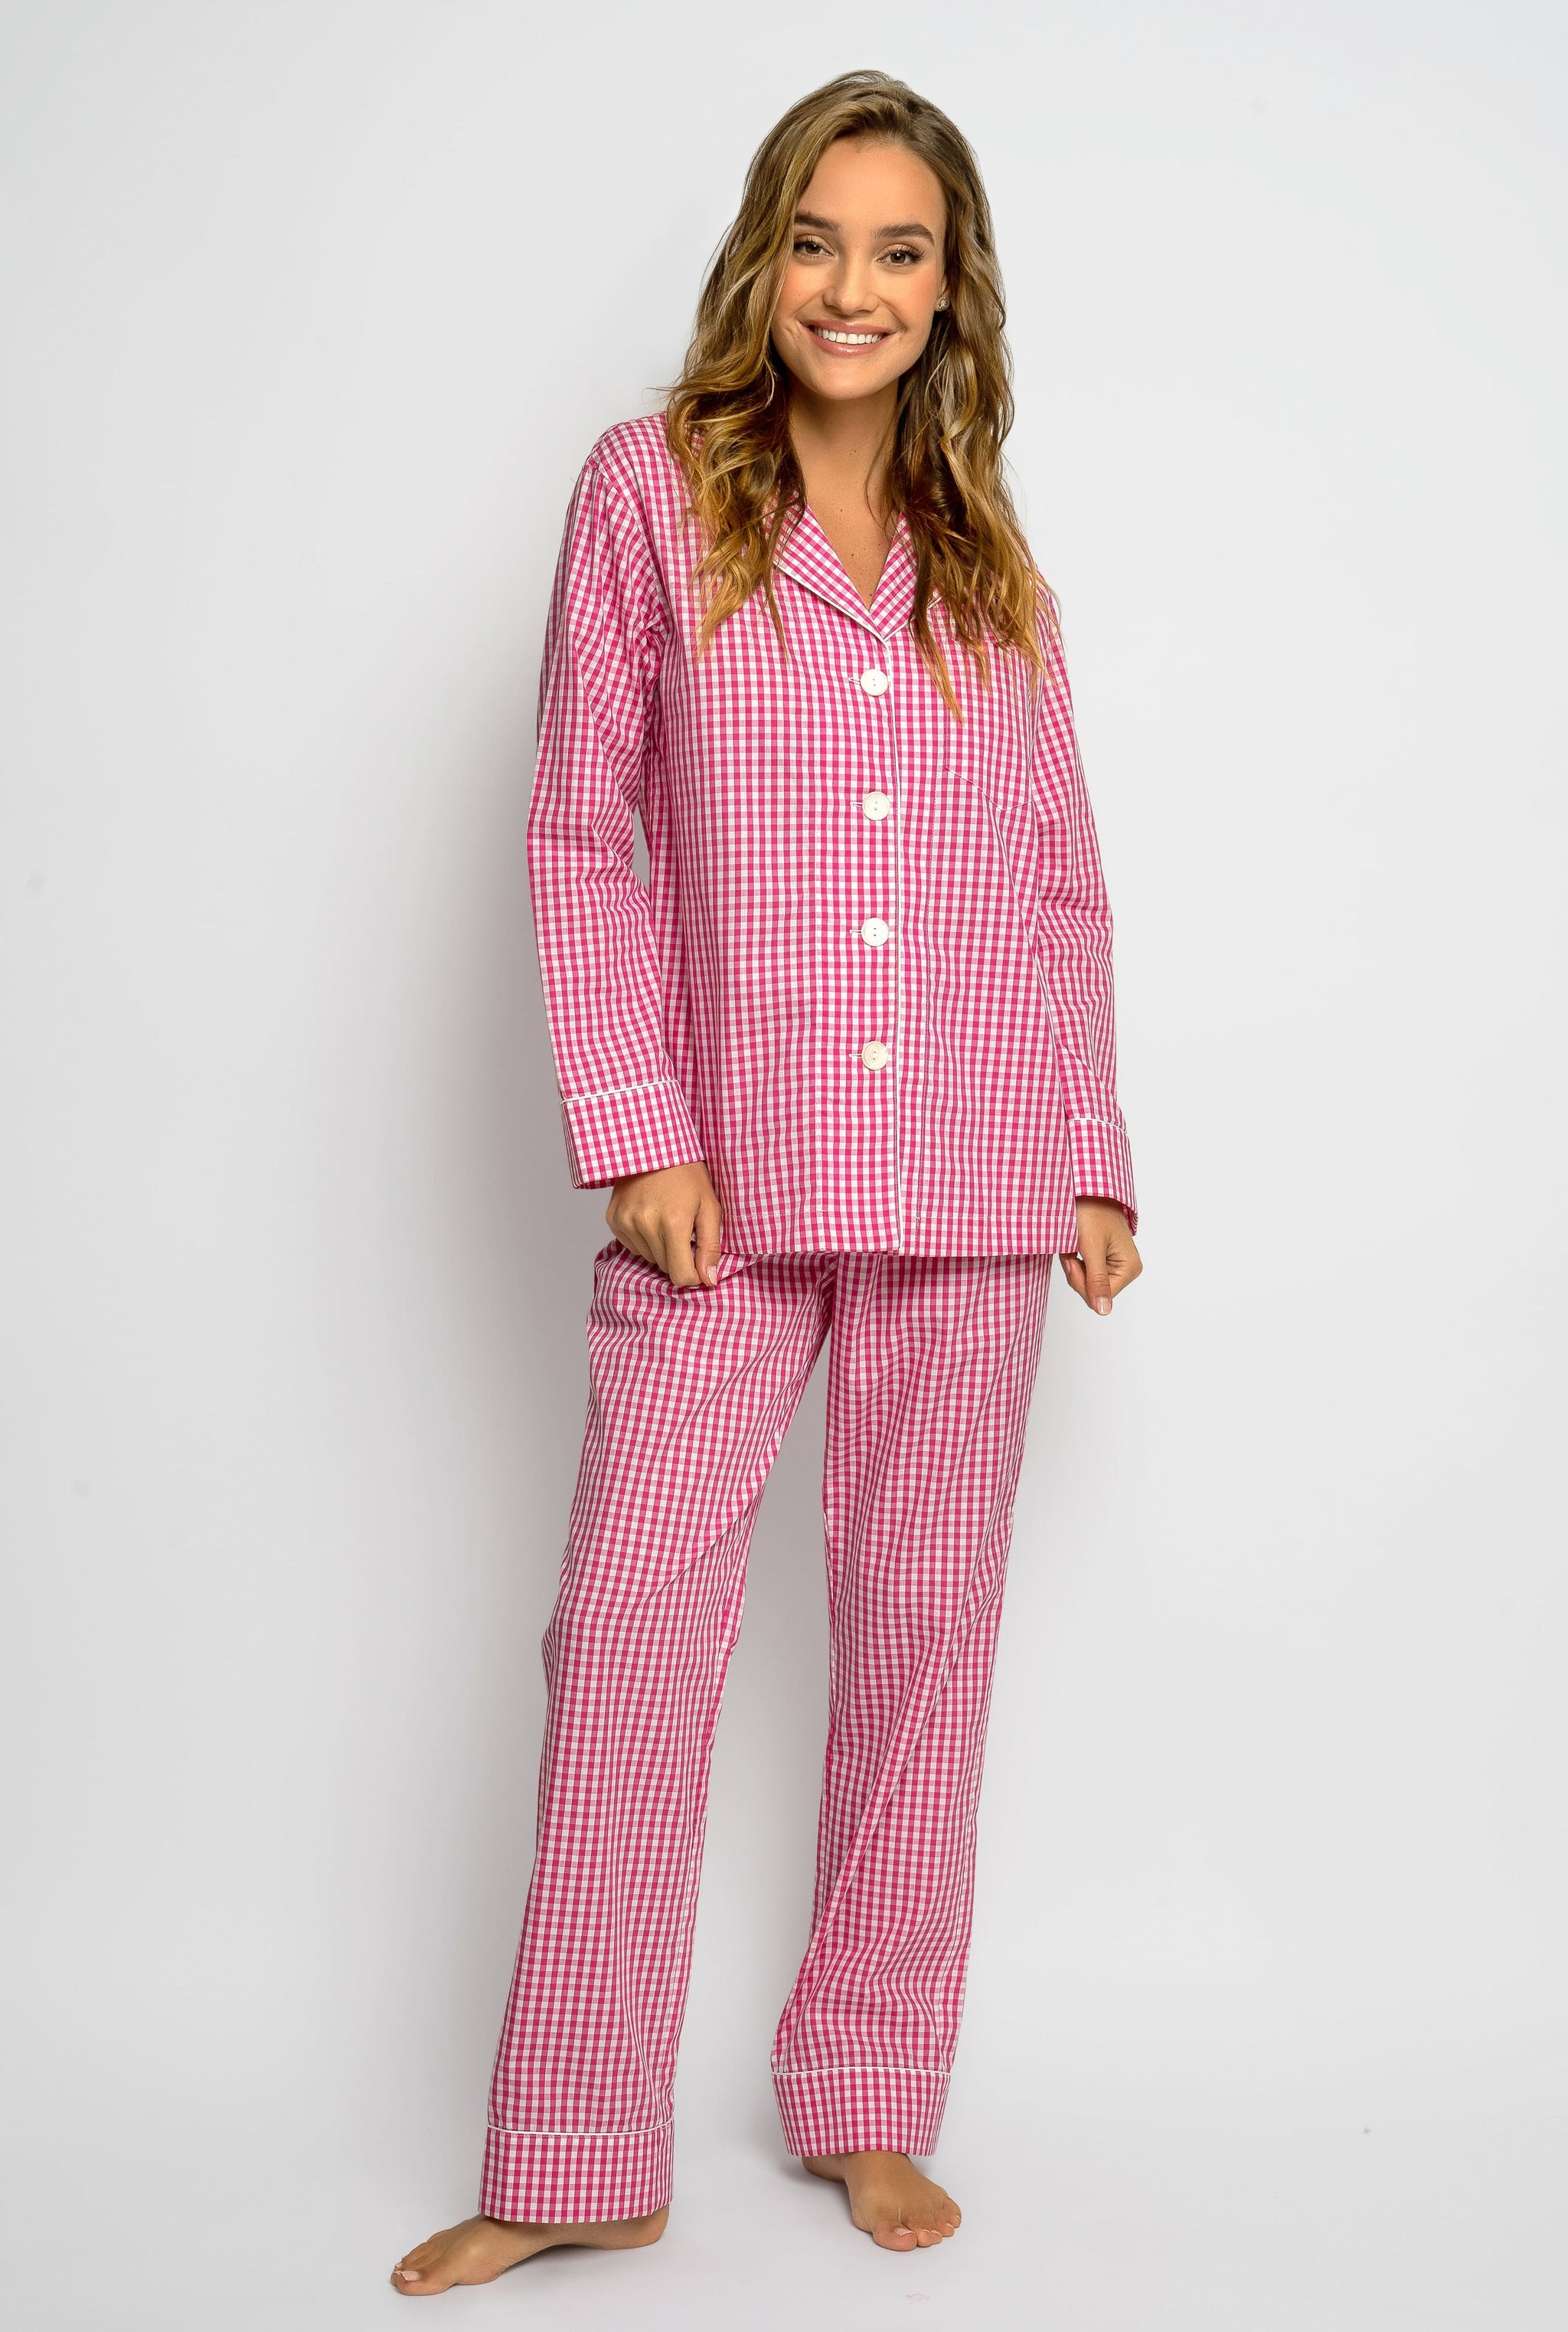 women's cotton pajamas